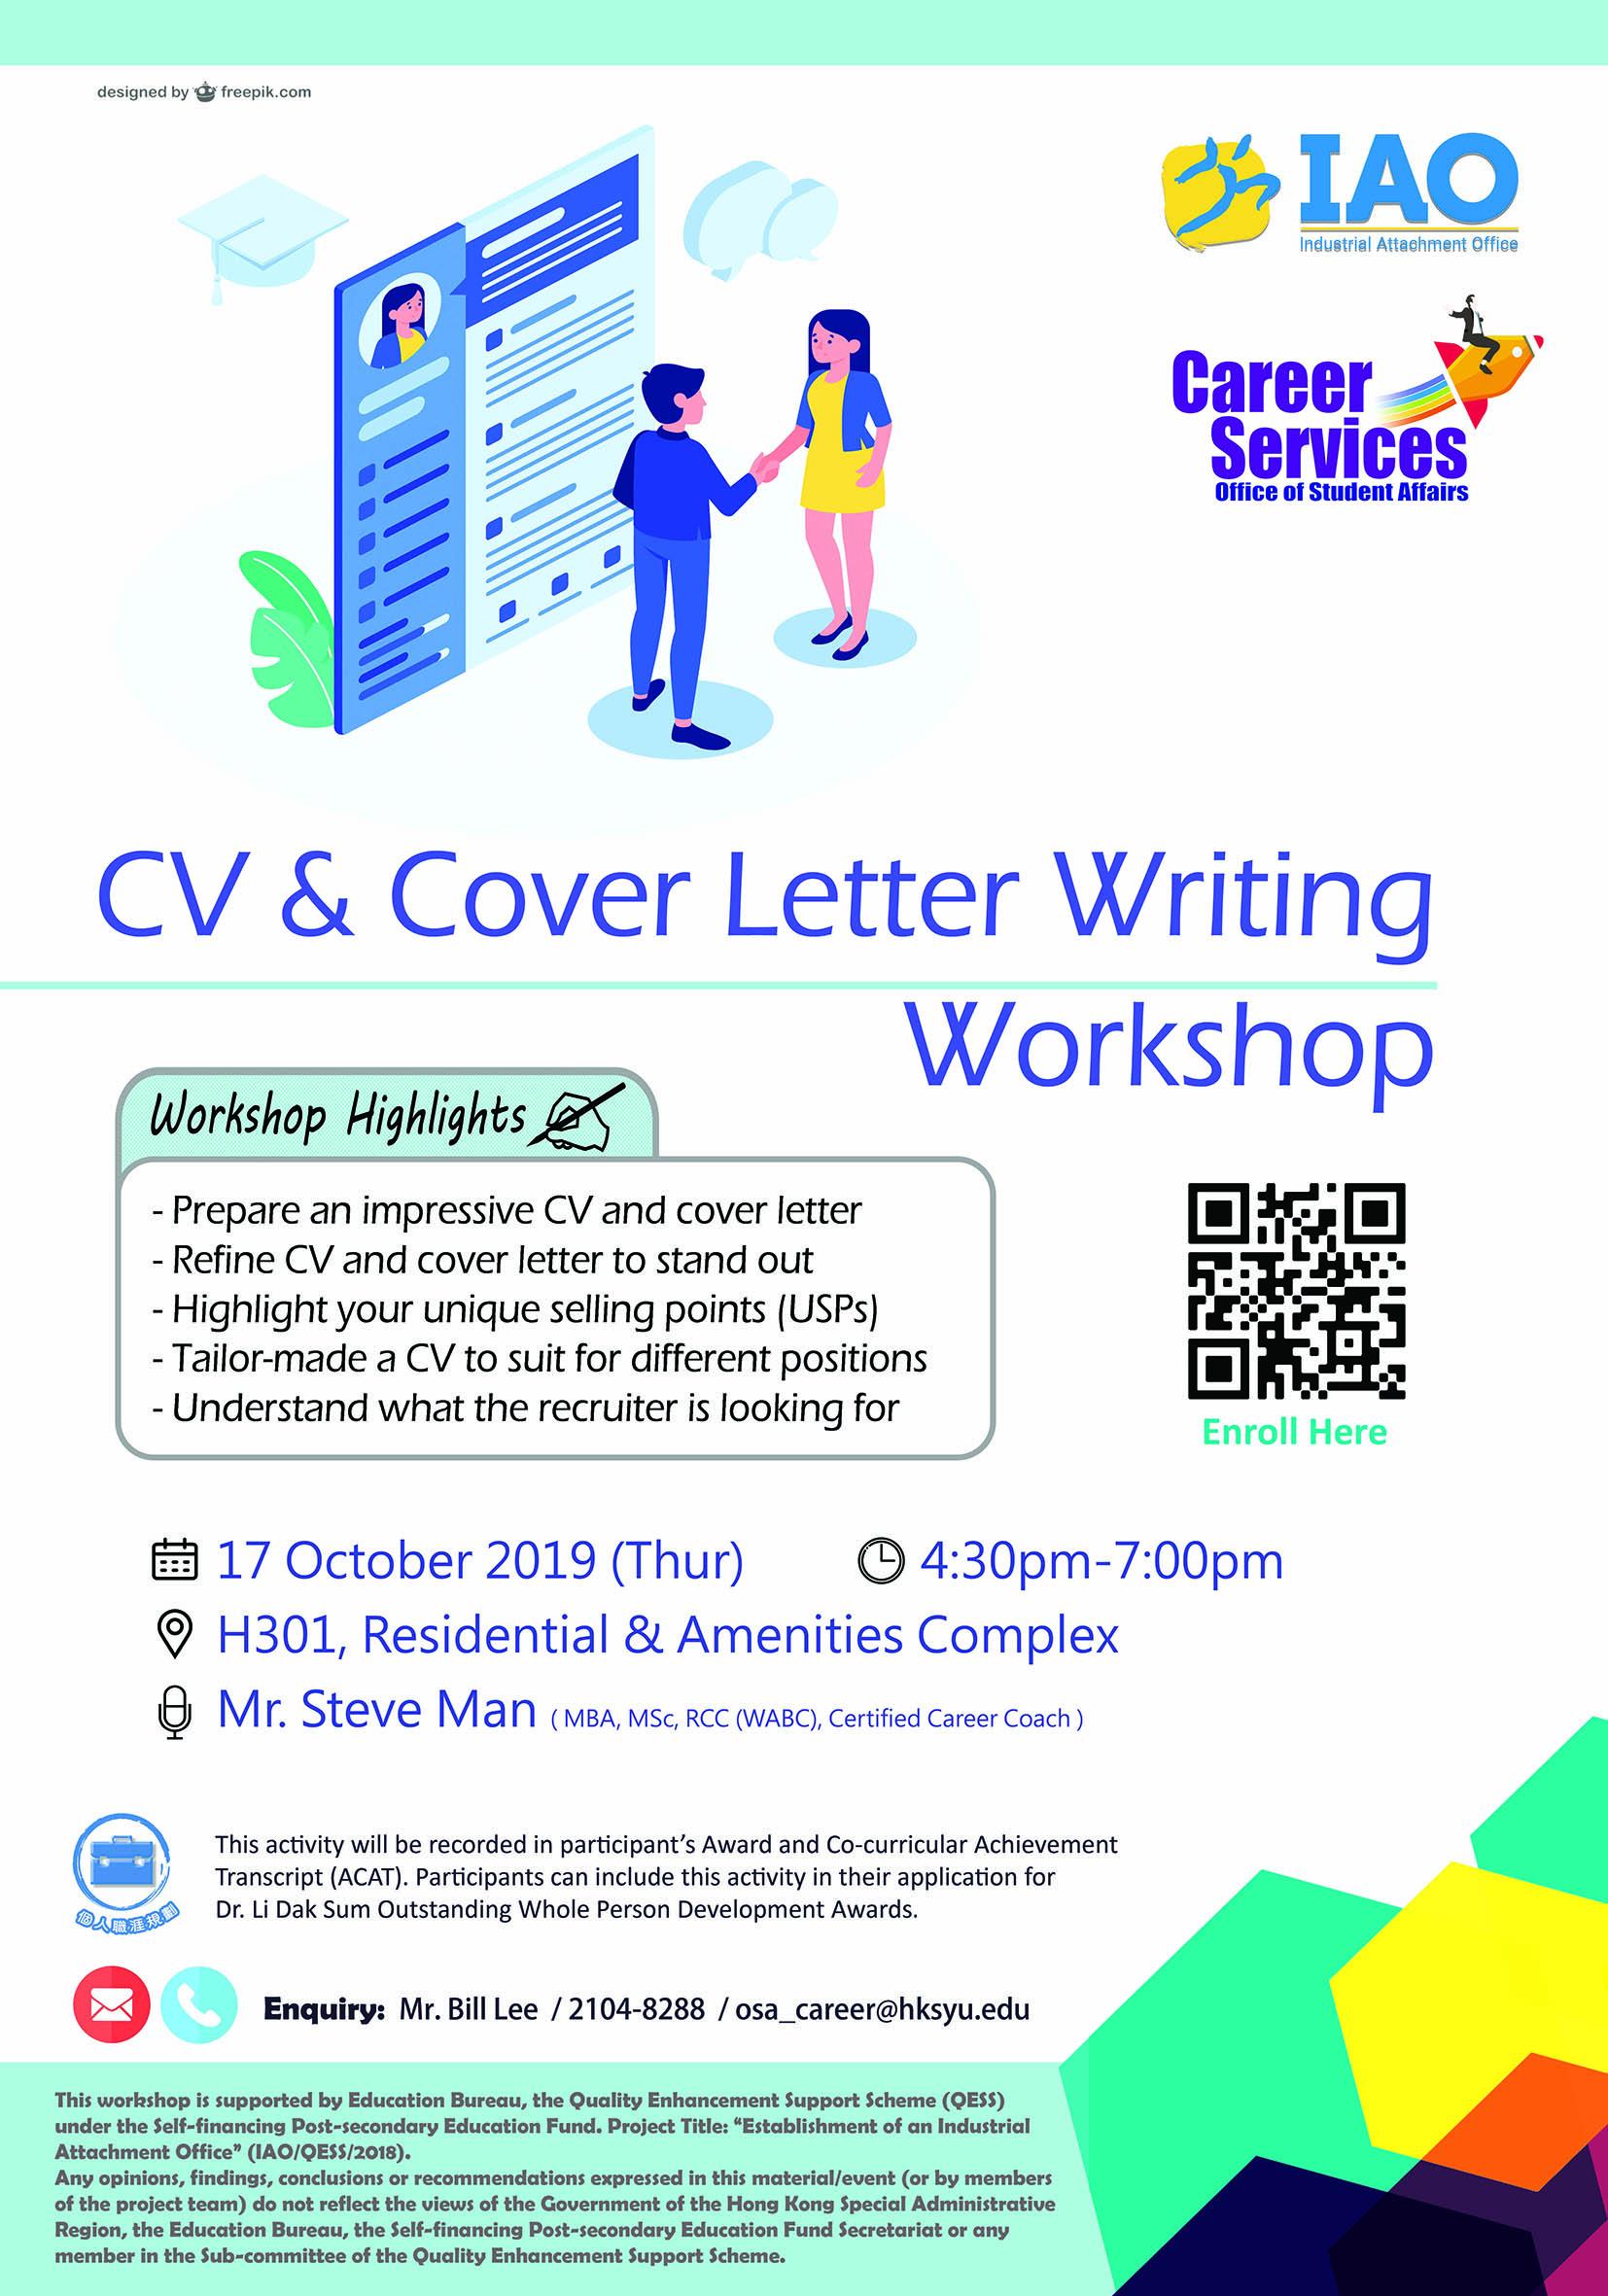 CV & Cover Letter Writing Workshop